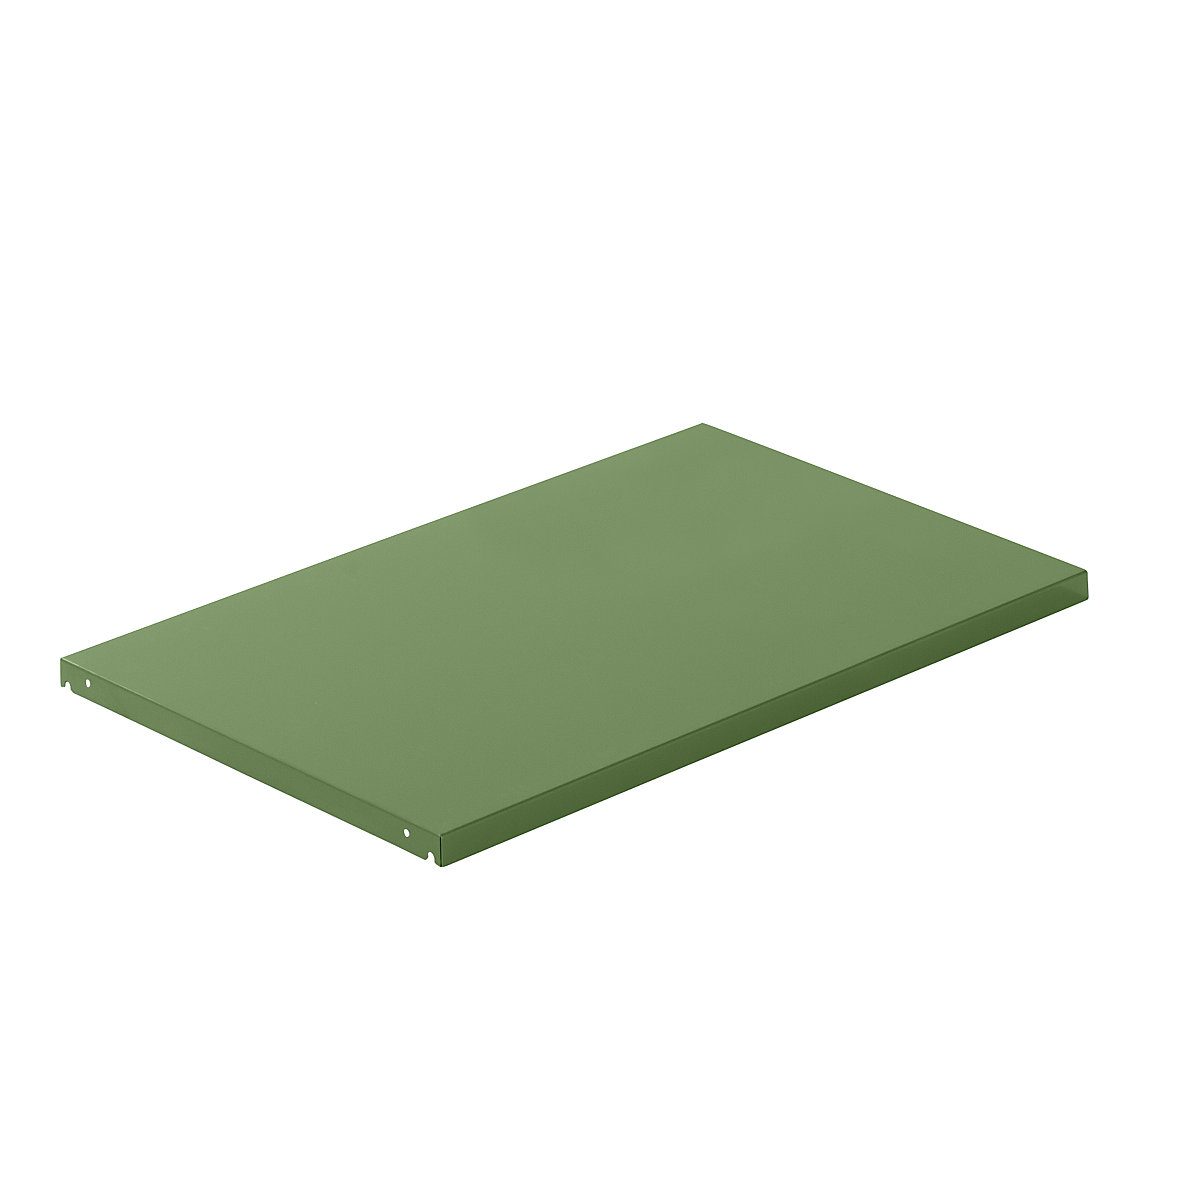 Półka wieńcząca z blachy stalowej – LISTA, szer. x głęb. 1290 x 860 mm, nośność półki 200 kg, rezedowo-zielony-4